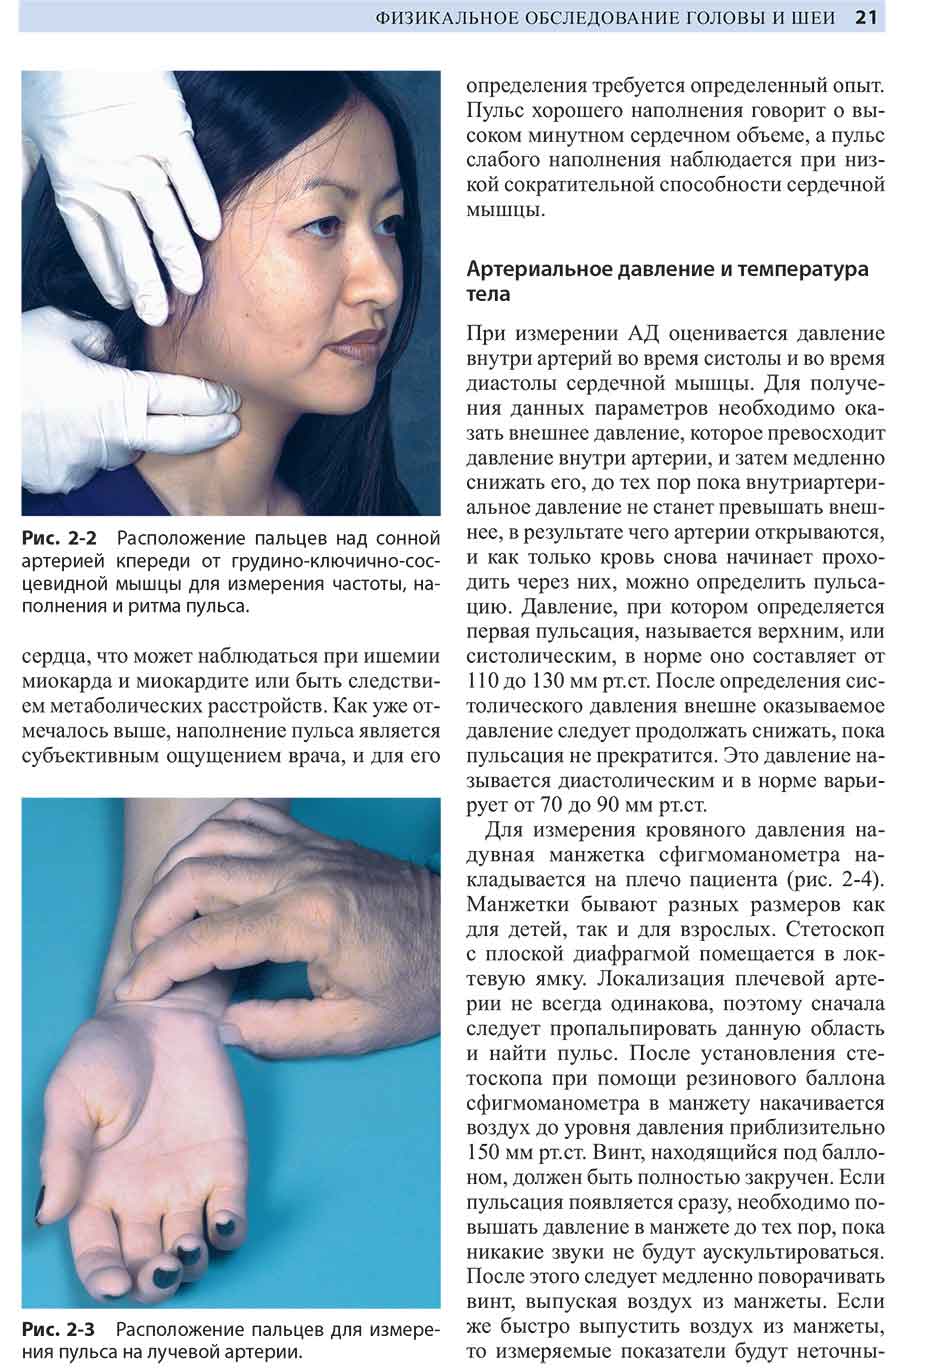 Рис. 2-3 Расположение пальцев для измерения пульса на лучевой артерии.